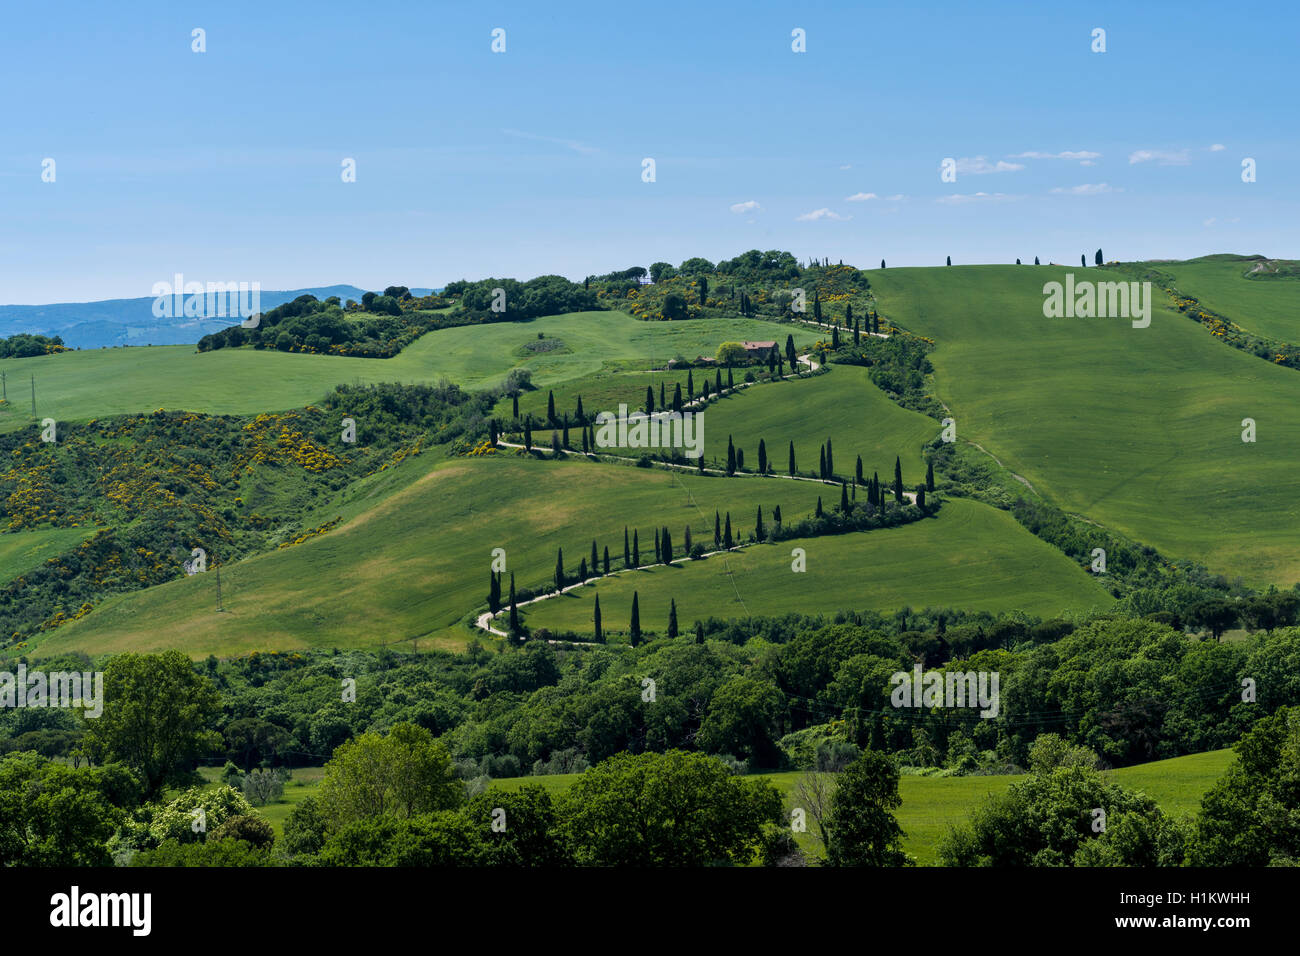 Verde típico paisaje toscano en Val d'Orcia con colinas, árboles, campos, cipreses y Farm Road, La Foce, Toscana, Italia Foto de stock